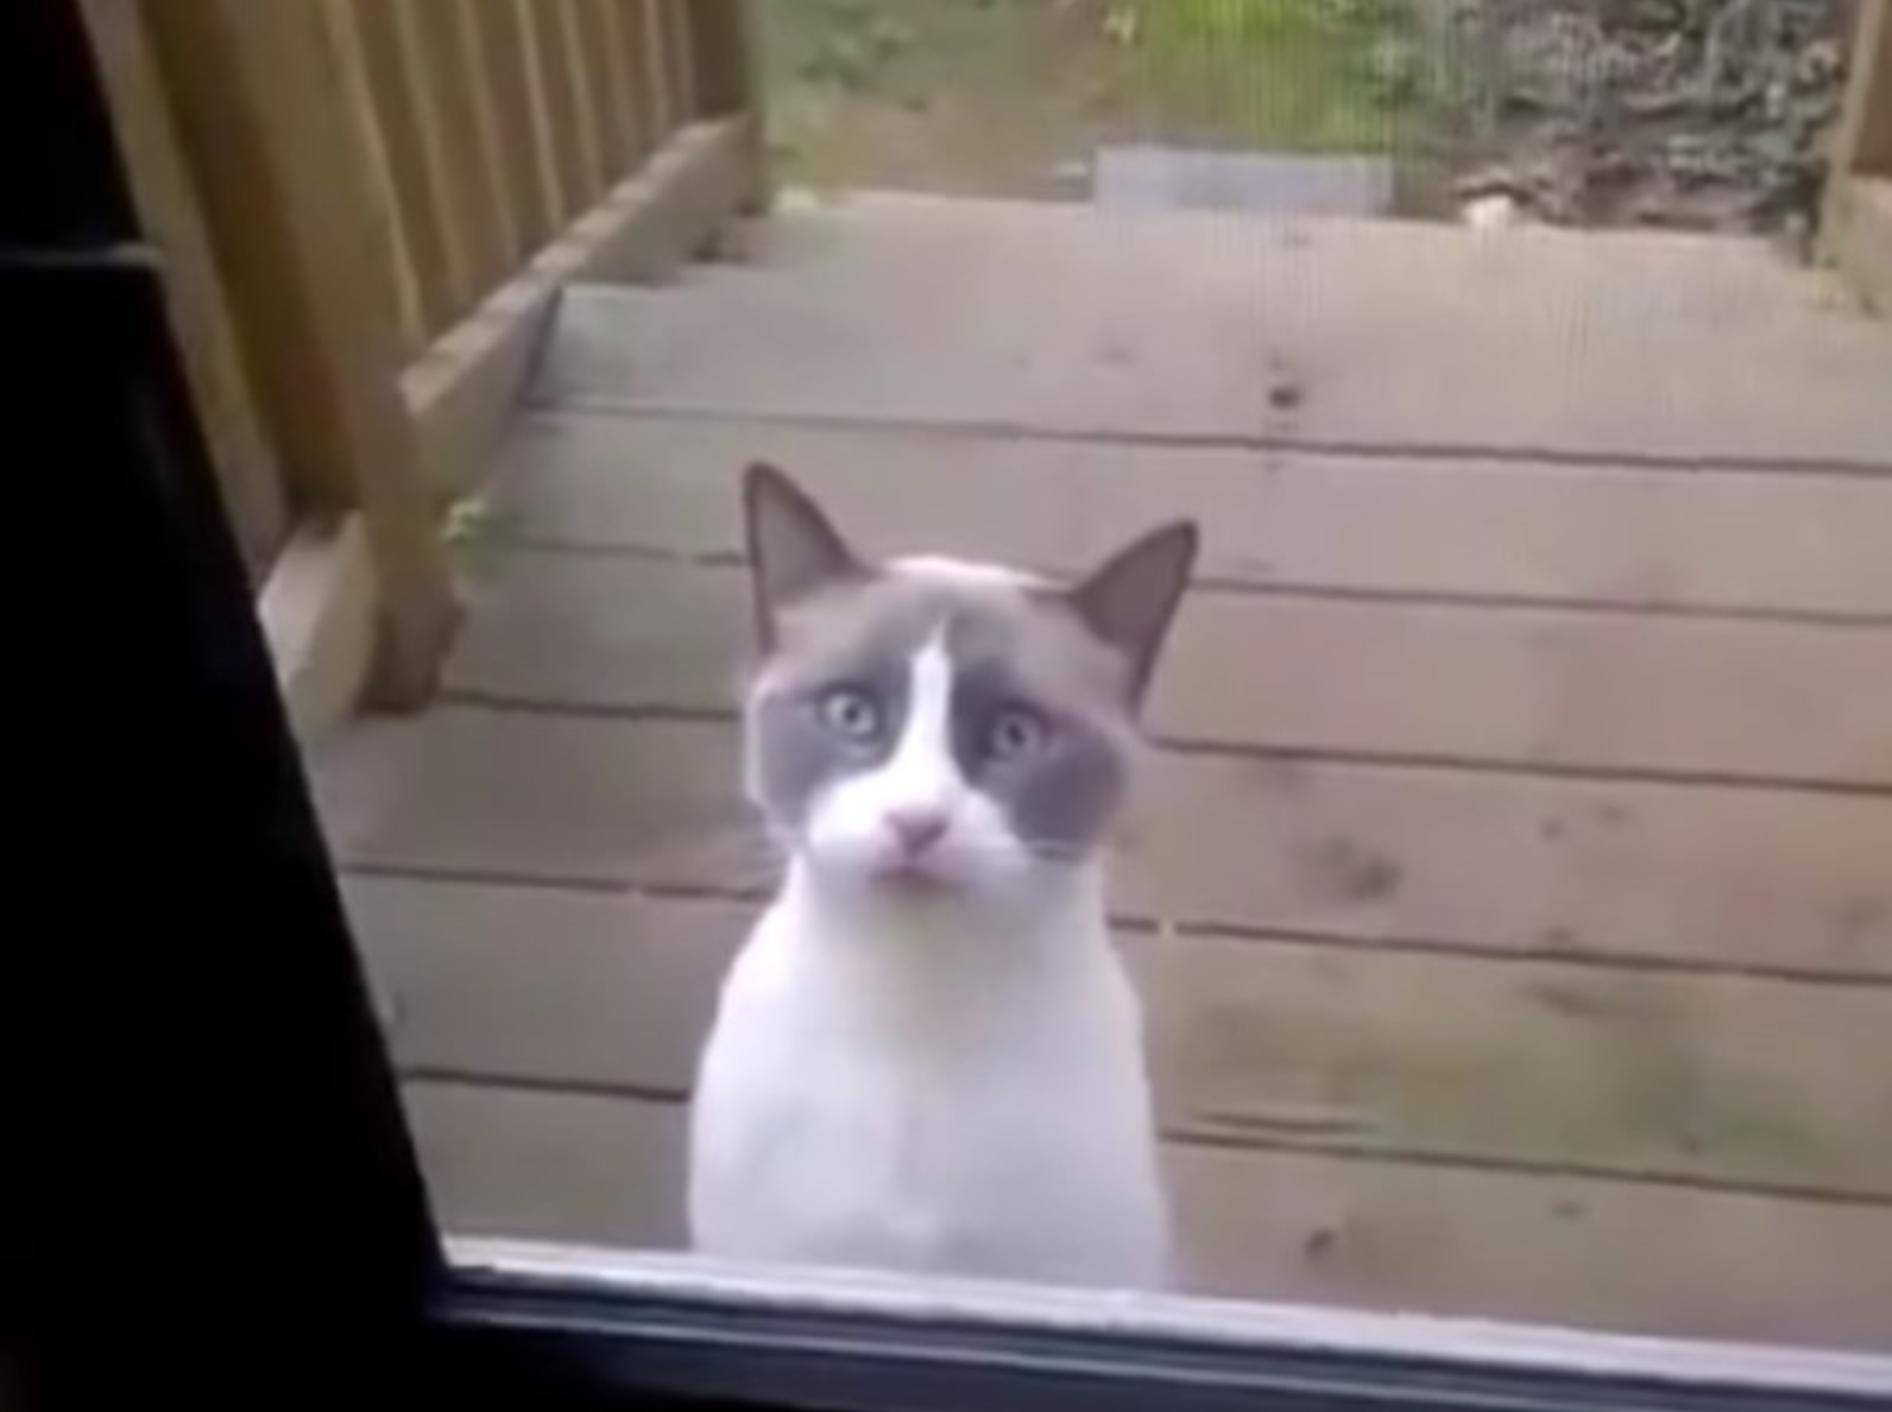 Irgendwie gruselig, wie die Katze da so jammert – YouTube / LachflashTV